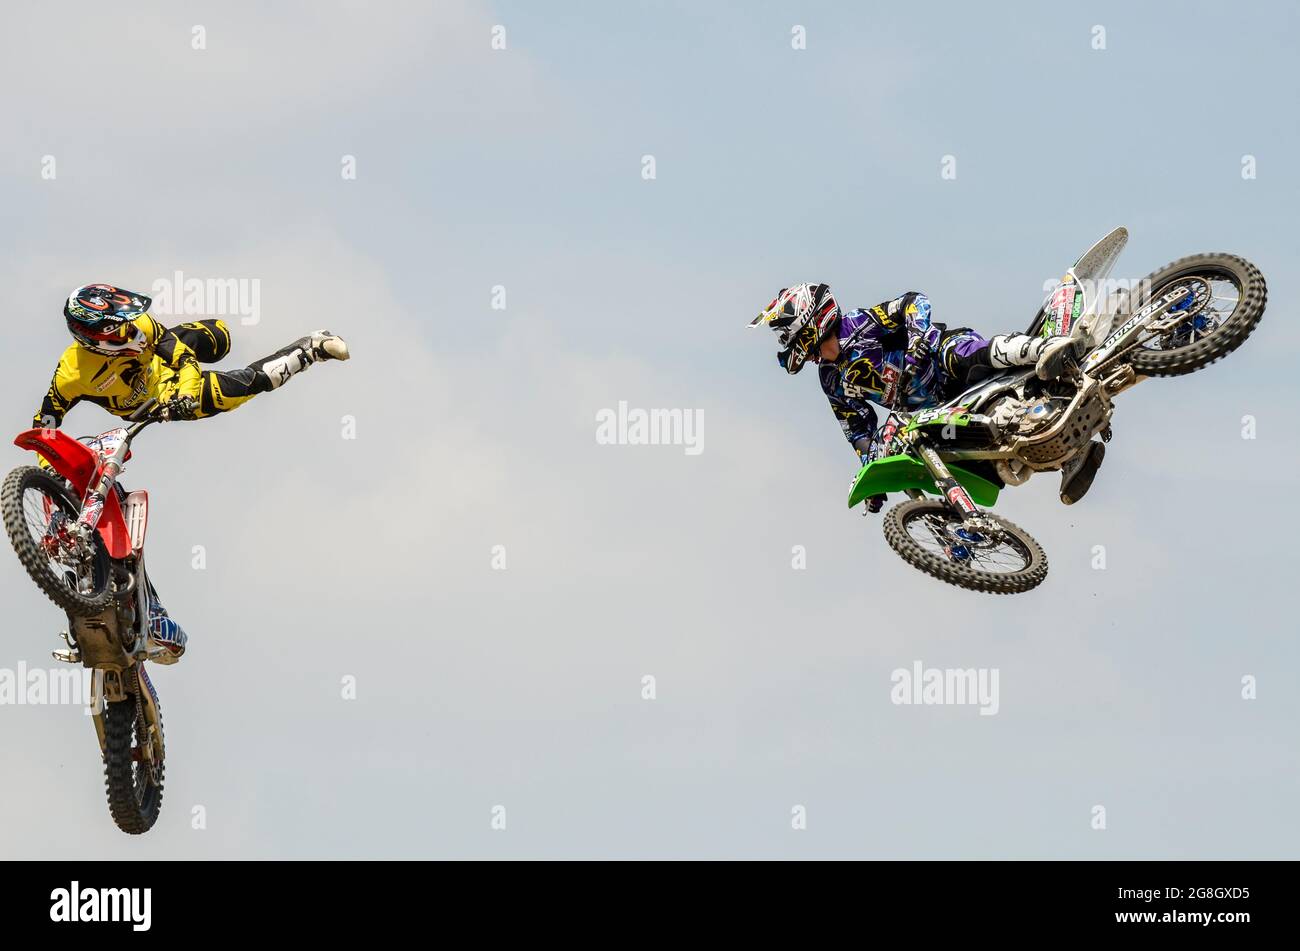 Motox-Stuntfahrer fliegen beim Goodwood Festival of Speed in Großbritannien durch die Luft. VERANSTALTUNG „GAS“ (Goodwood Action Sports). Motorrad-Stunts-Paar Stockfoto